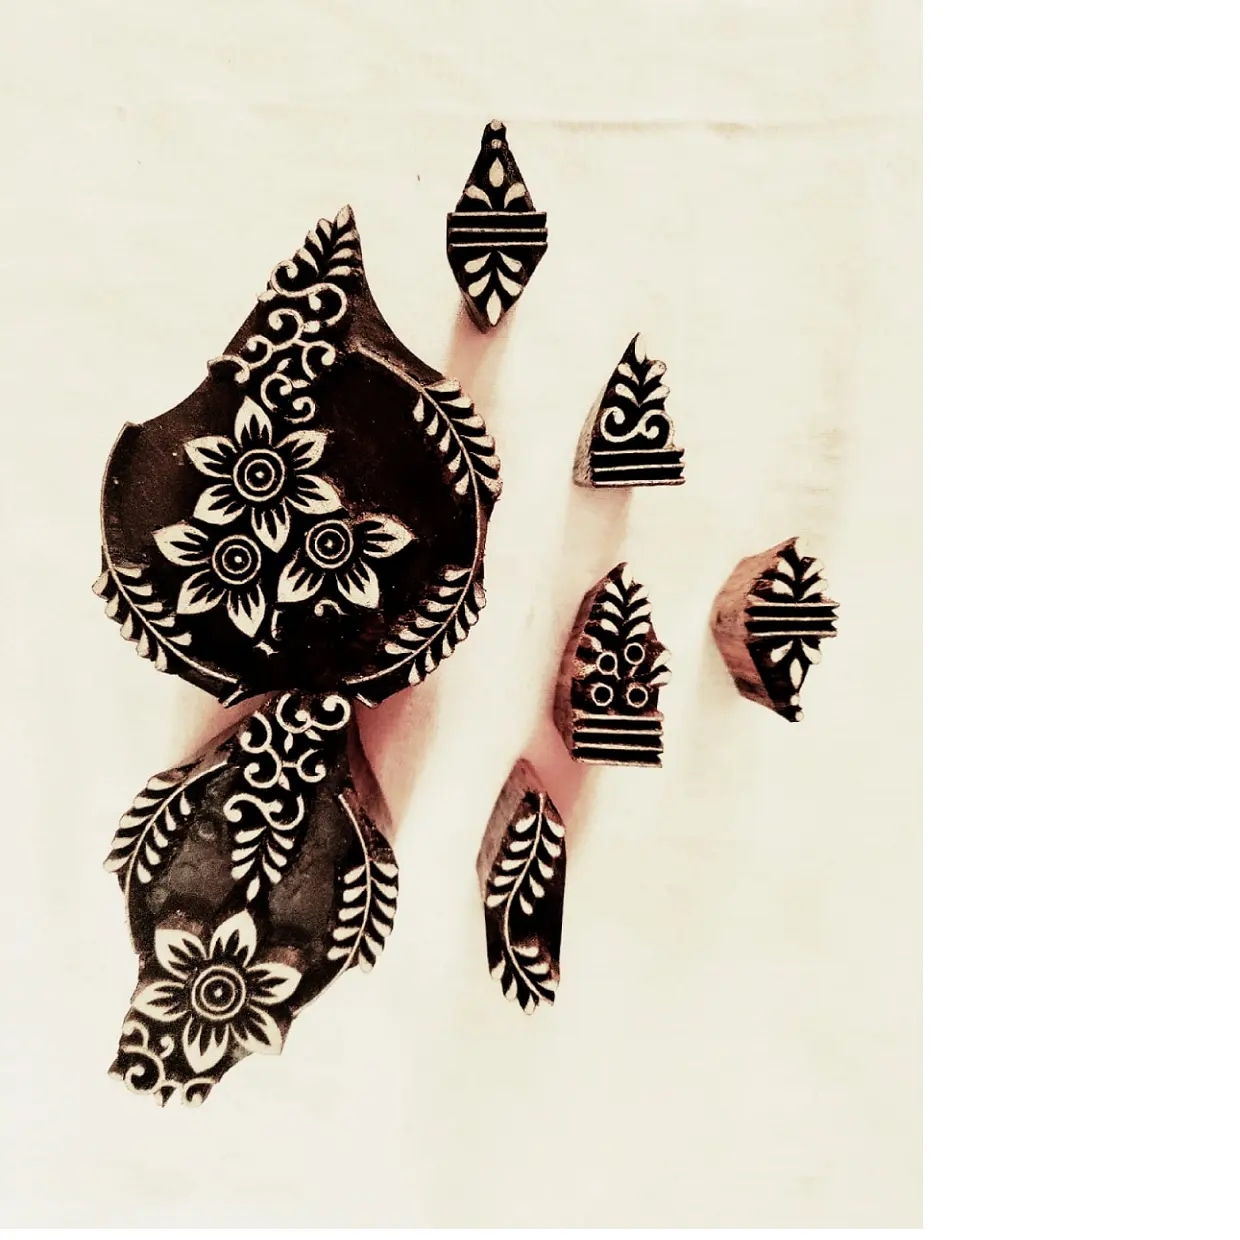 Conjuntos de impressão de blocos de madeira feitos sob encomenda, adequados para artistas de henna e designers mehendi, ideal para resale e pode ser personalizado